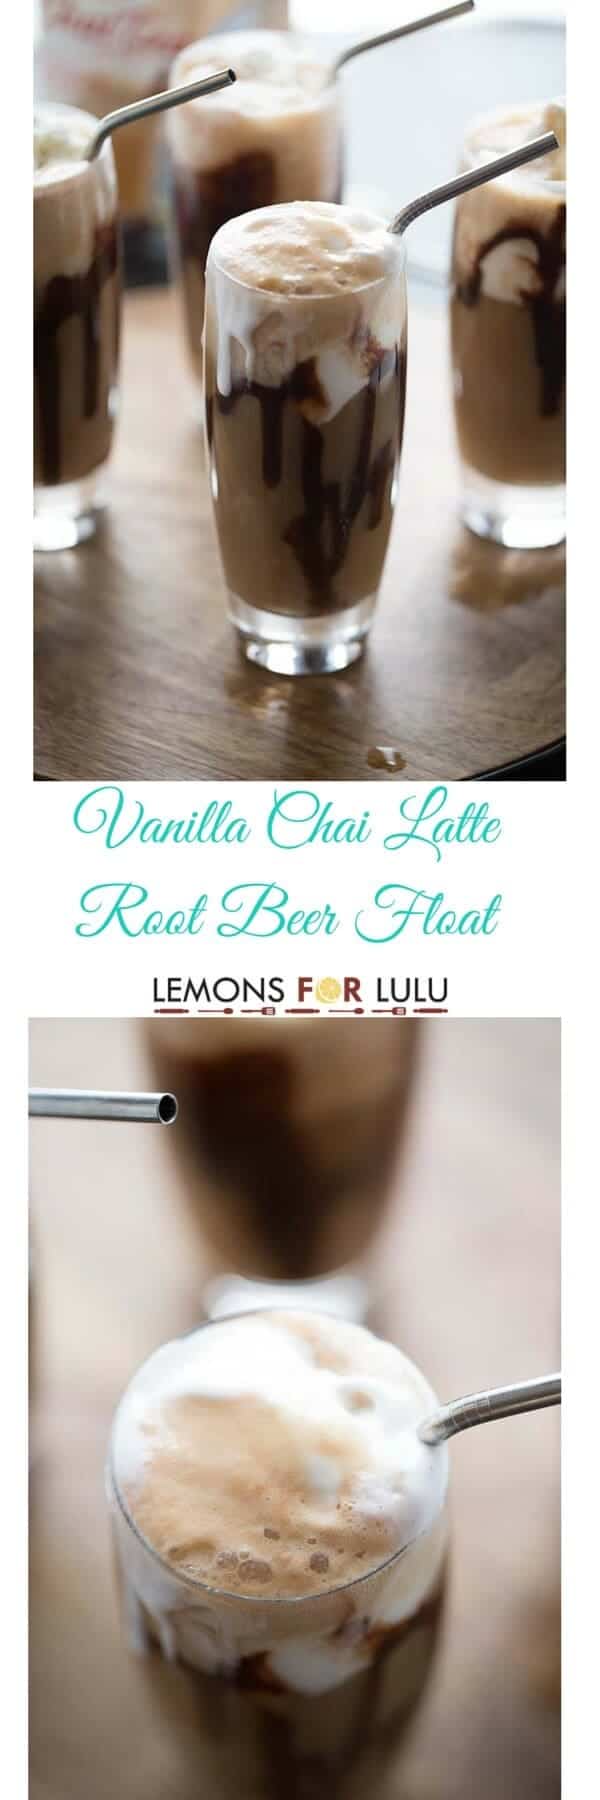 vanilla chai latte root beer float